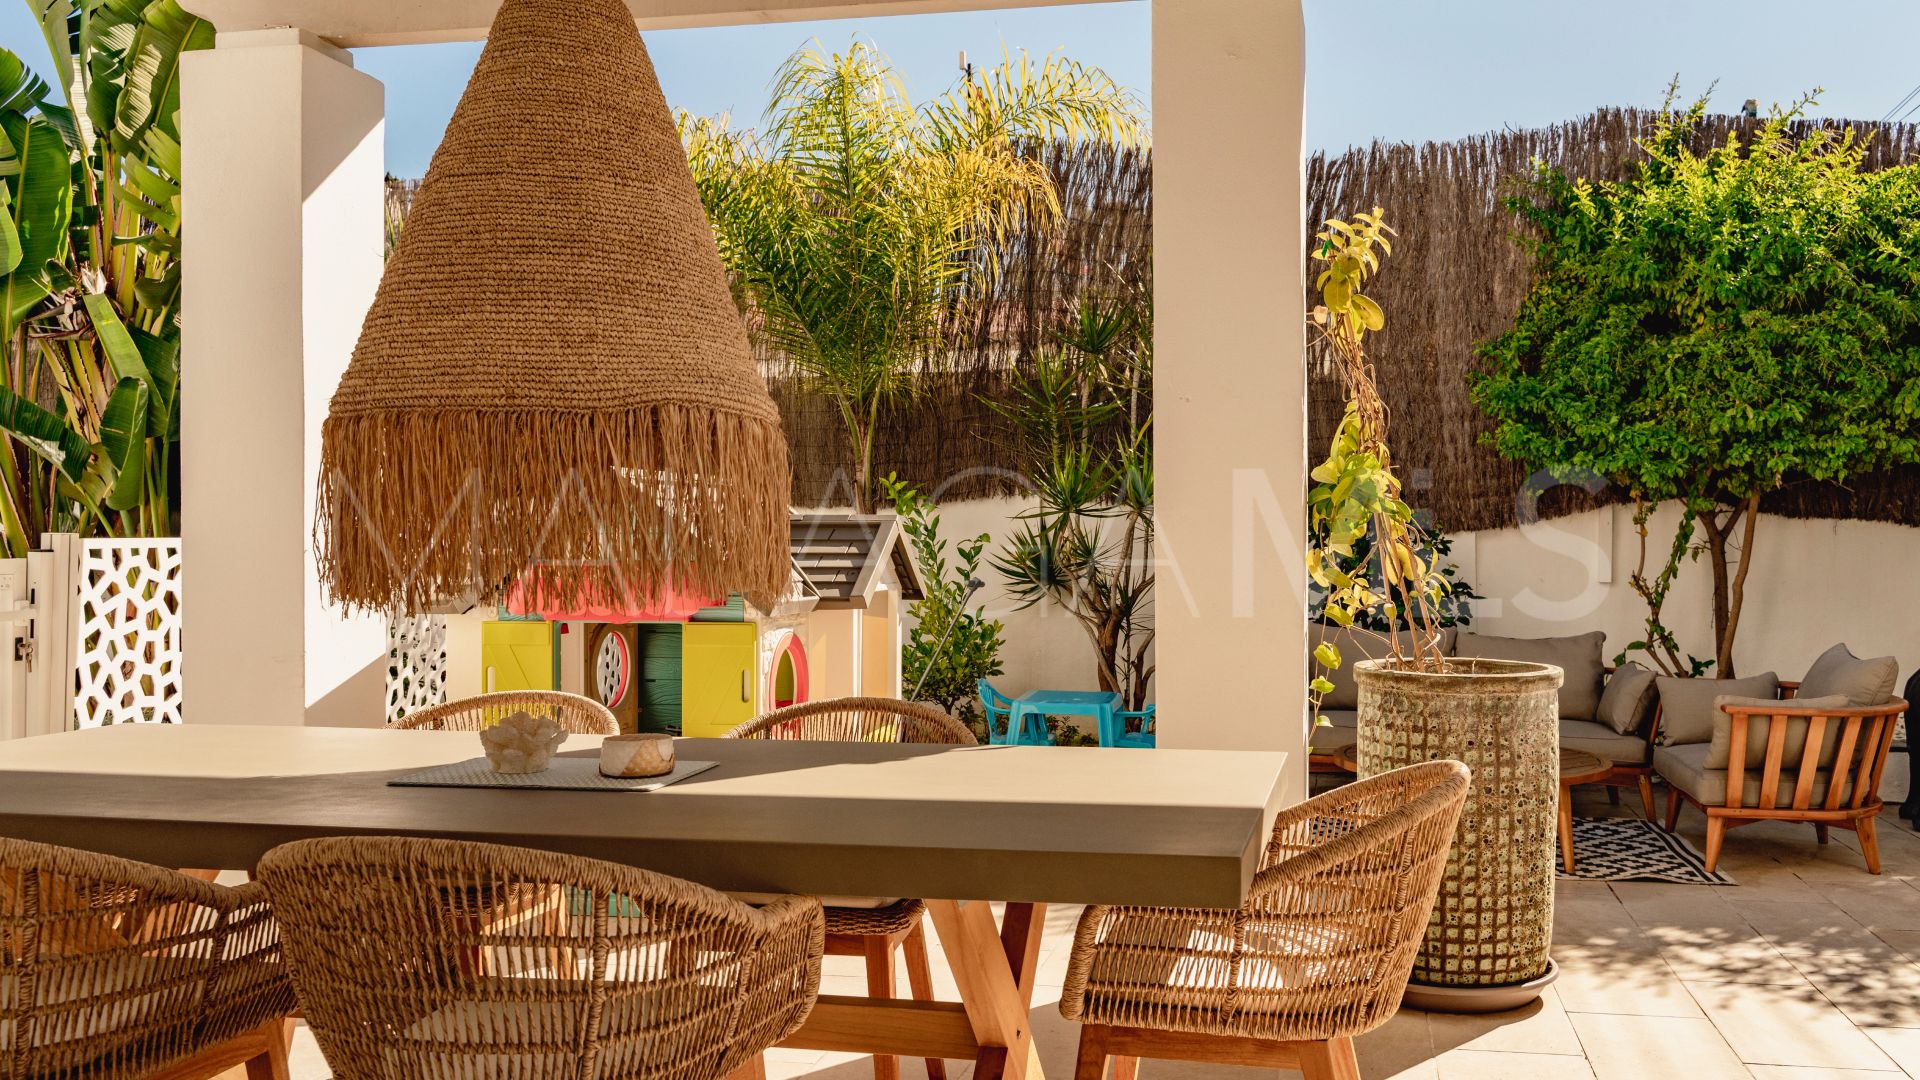 Se vende villa de 4 bedrooms in Linda Vista Baja